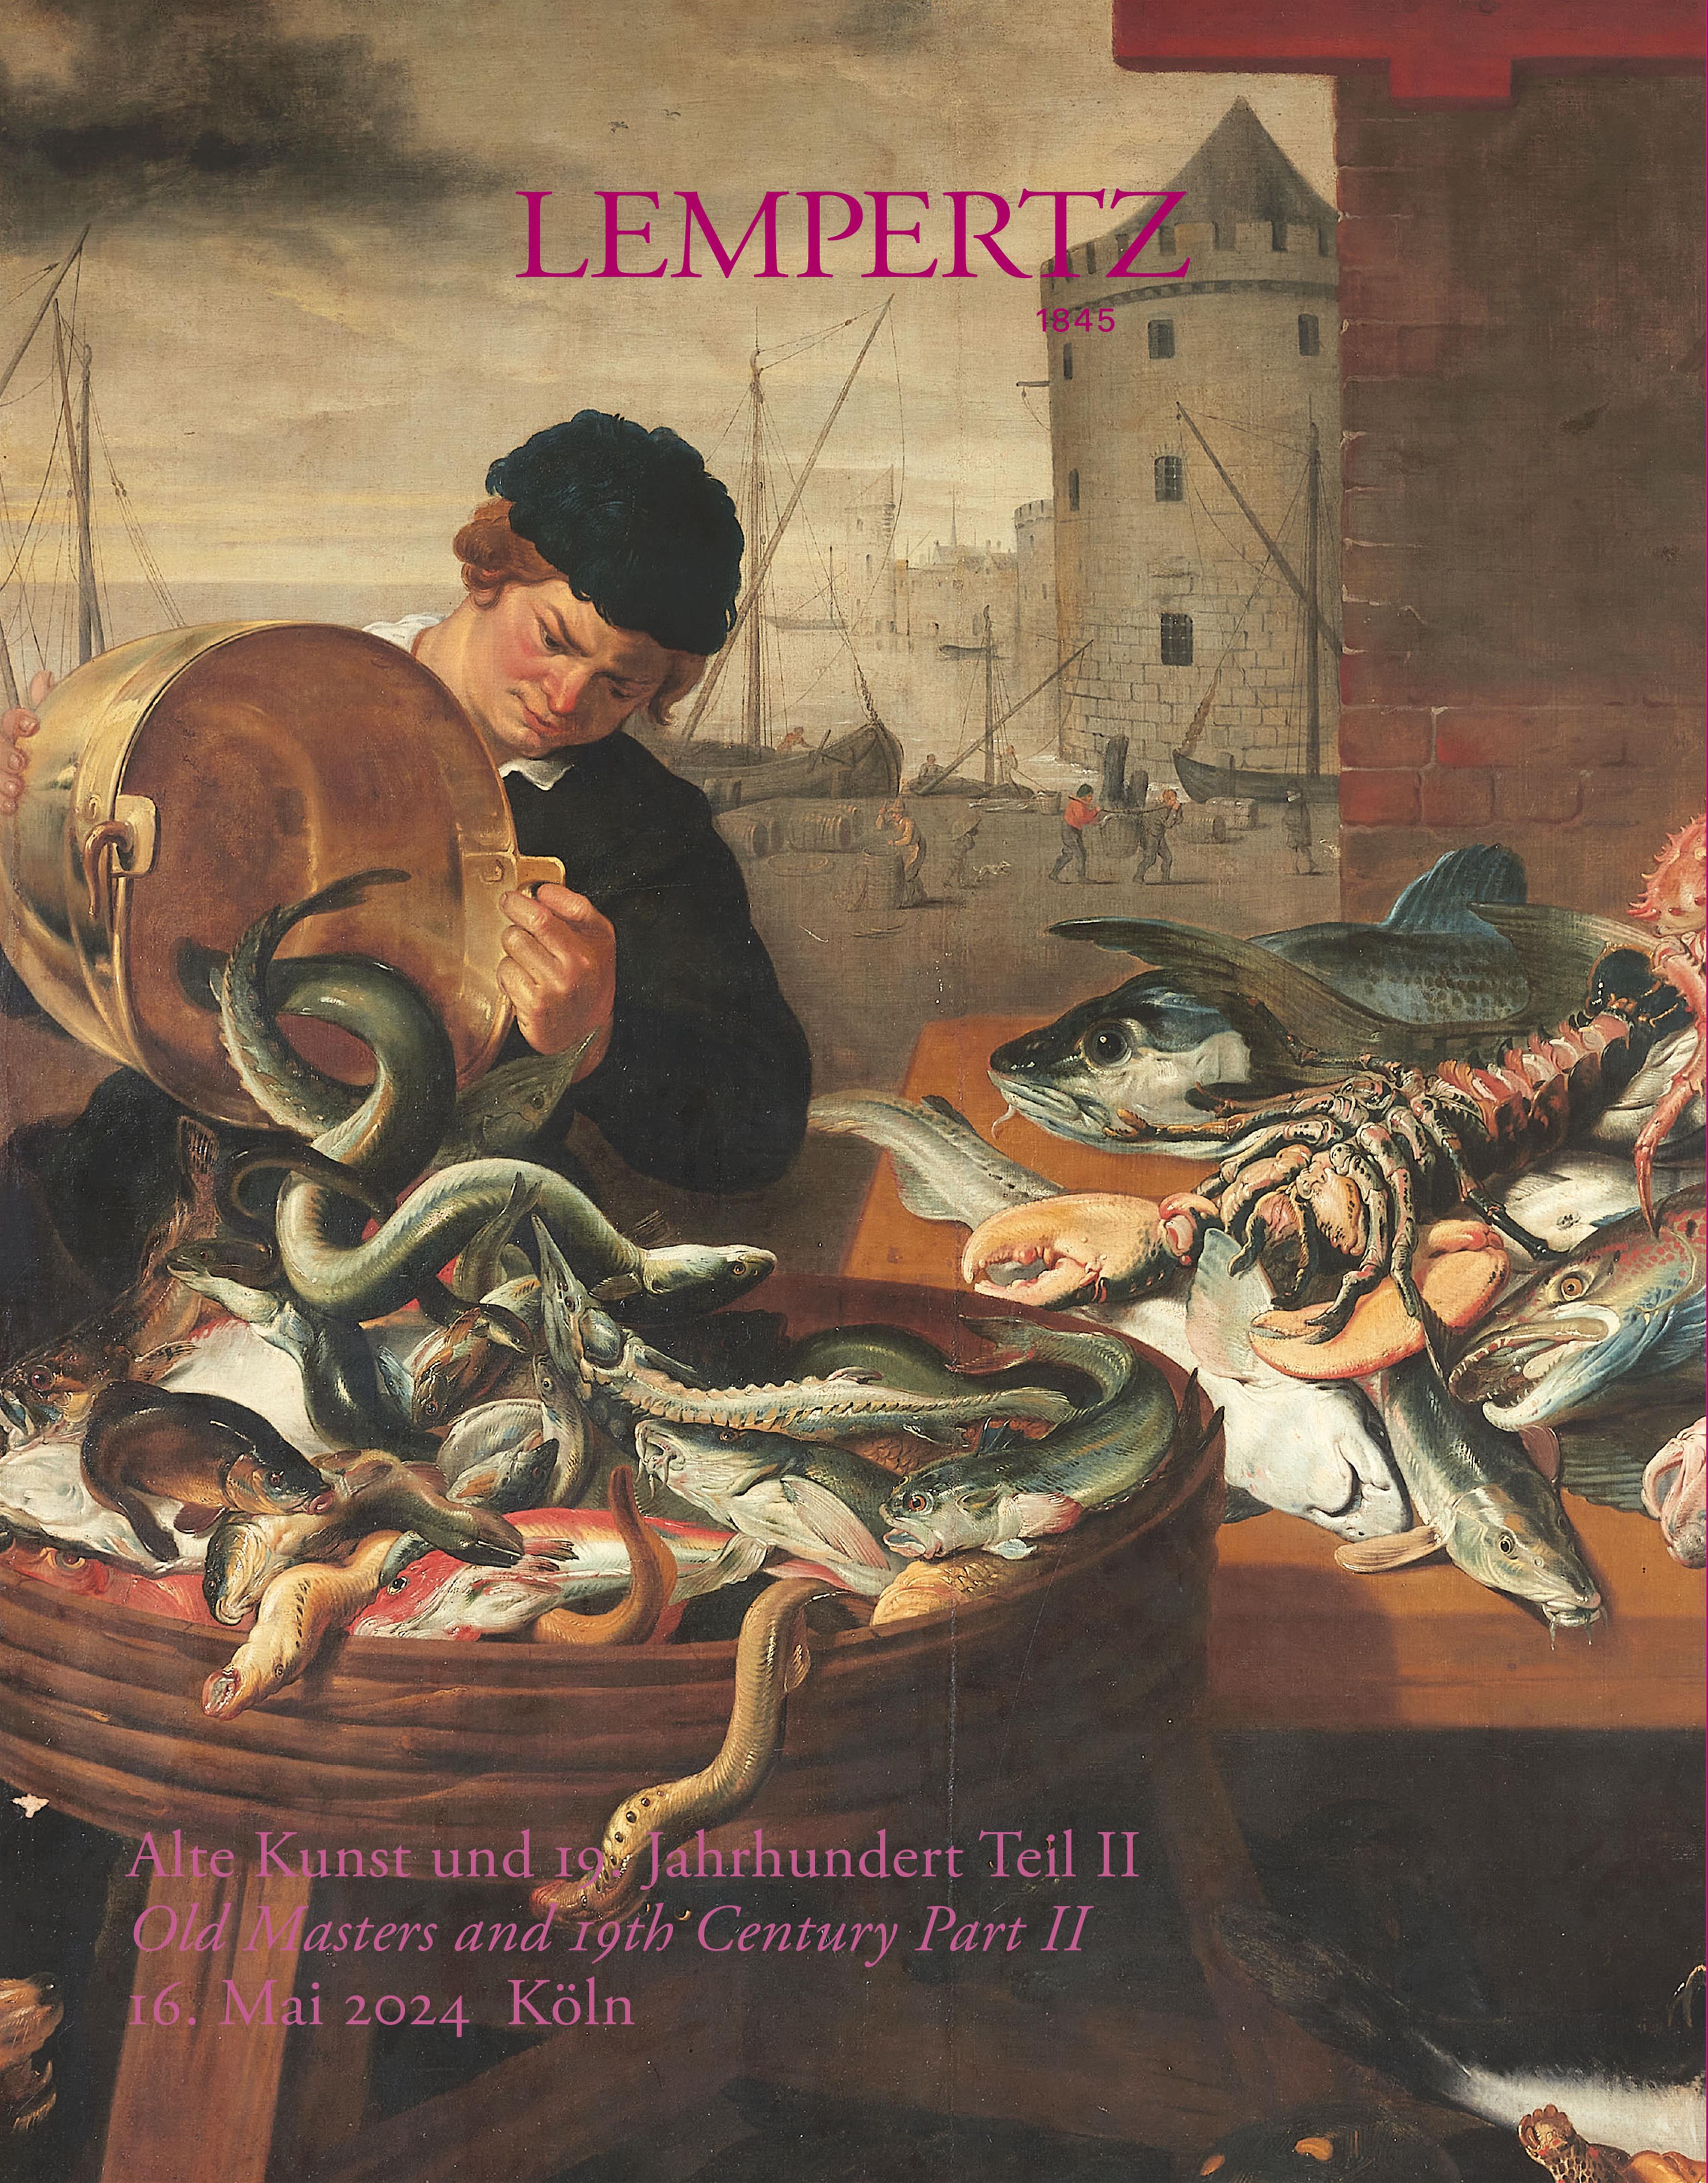 Auktionskatalog - Alte Kunst und 19. Jahrhundert, Teil II. - Online Katalog - Auktion 1245 – Ersteigern Sie hochwertige Kunst in der nächsten Lempertz-Auktion!